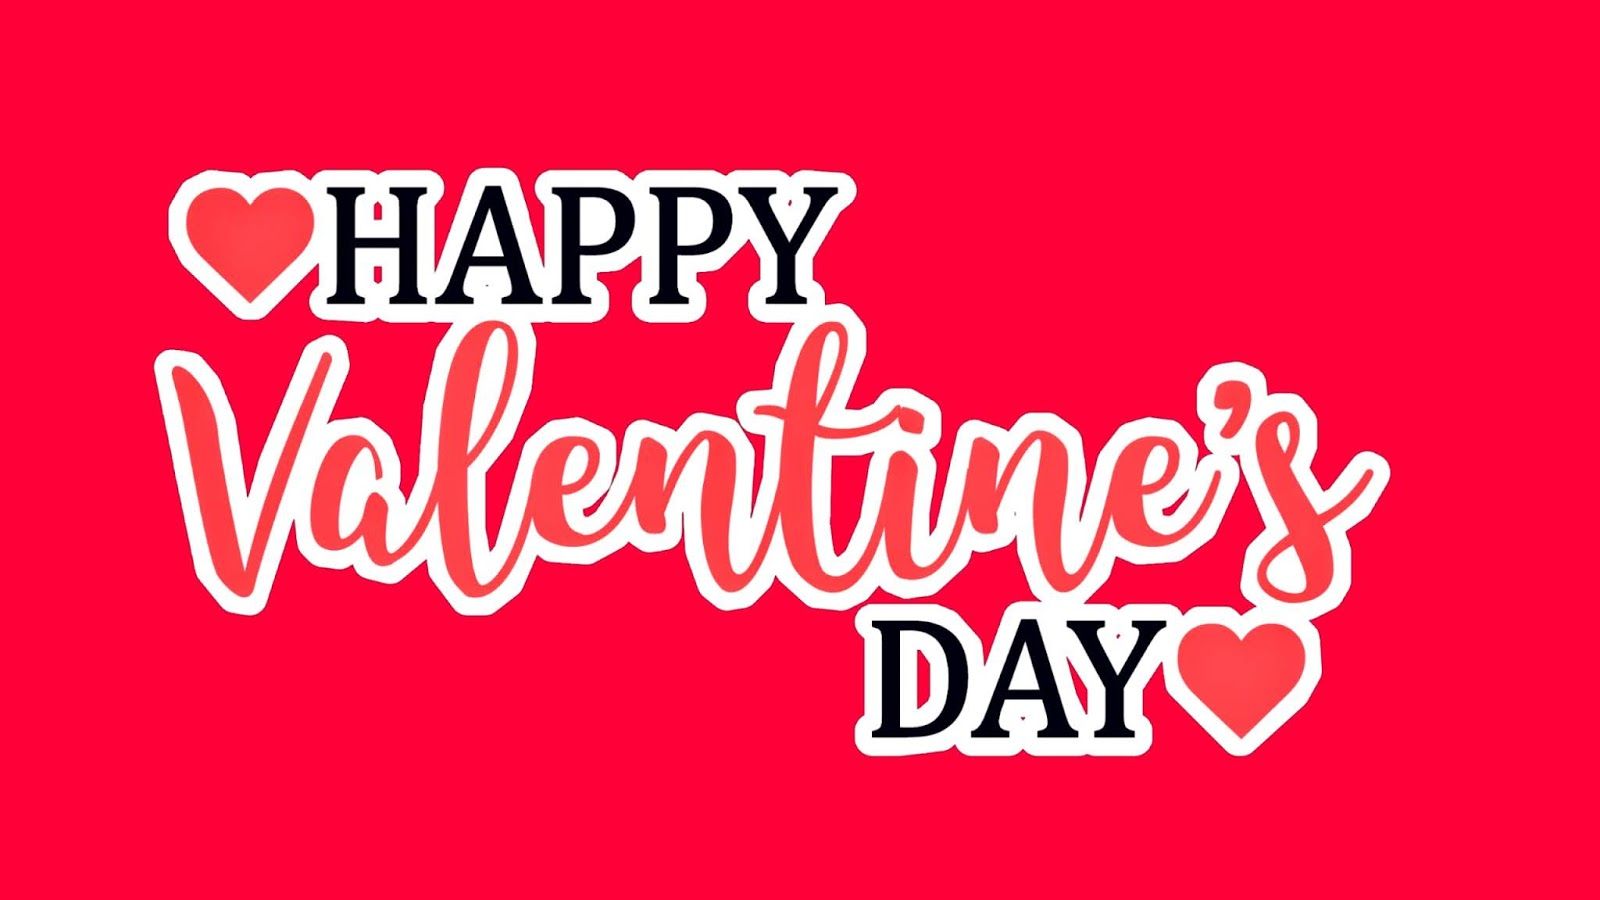 Happy Valentine’s Day 2021 Wishes